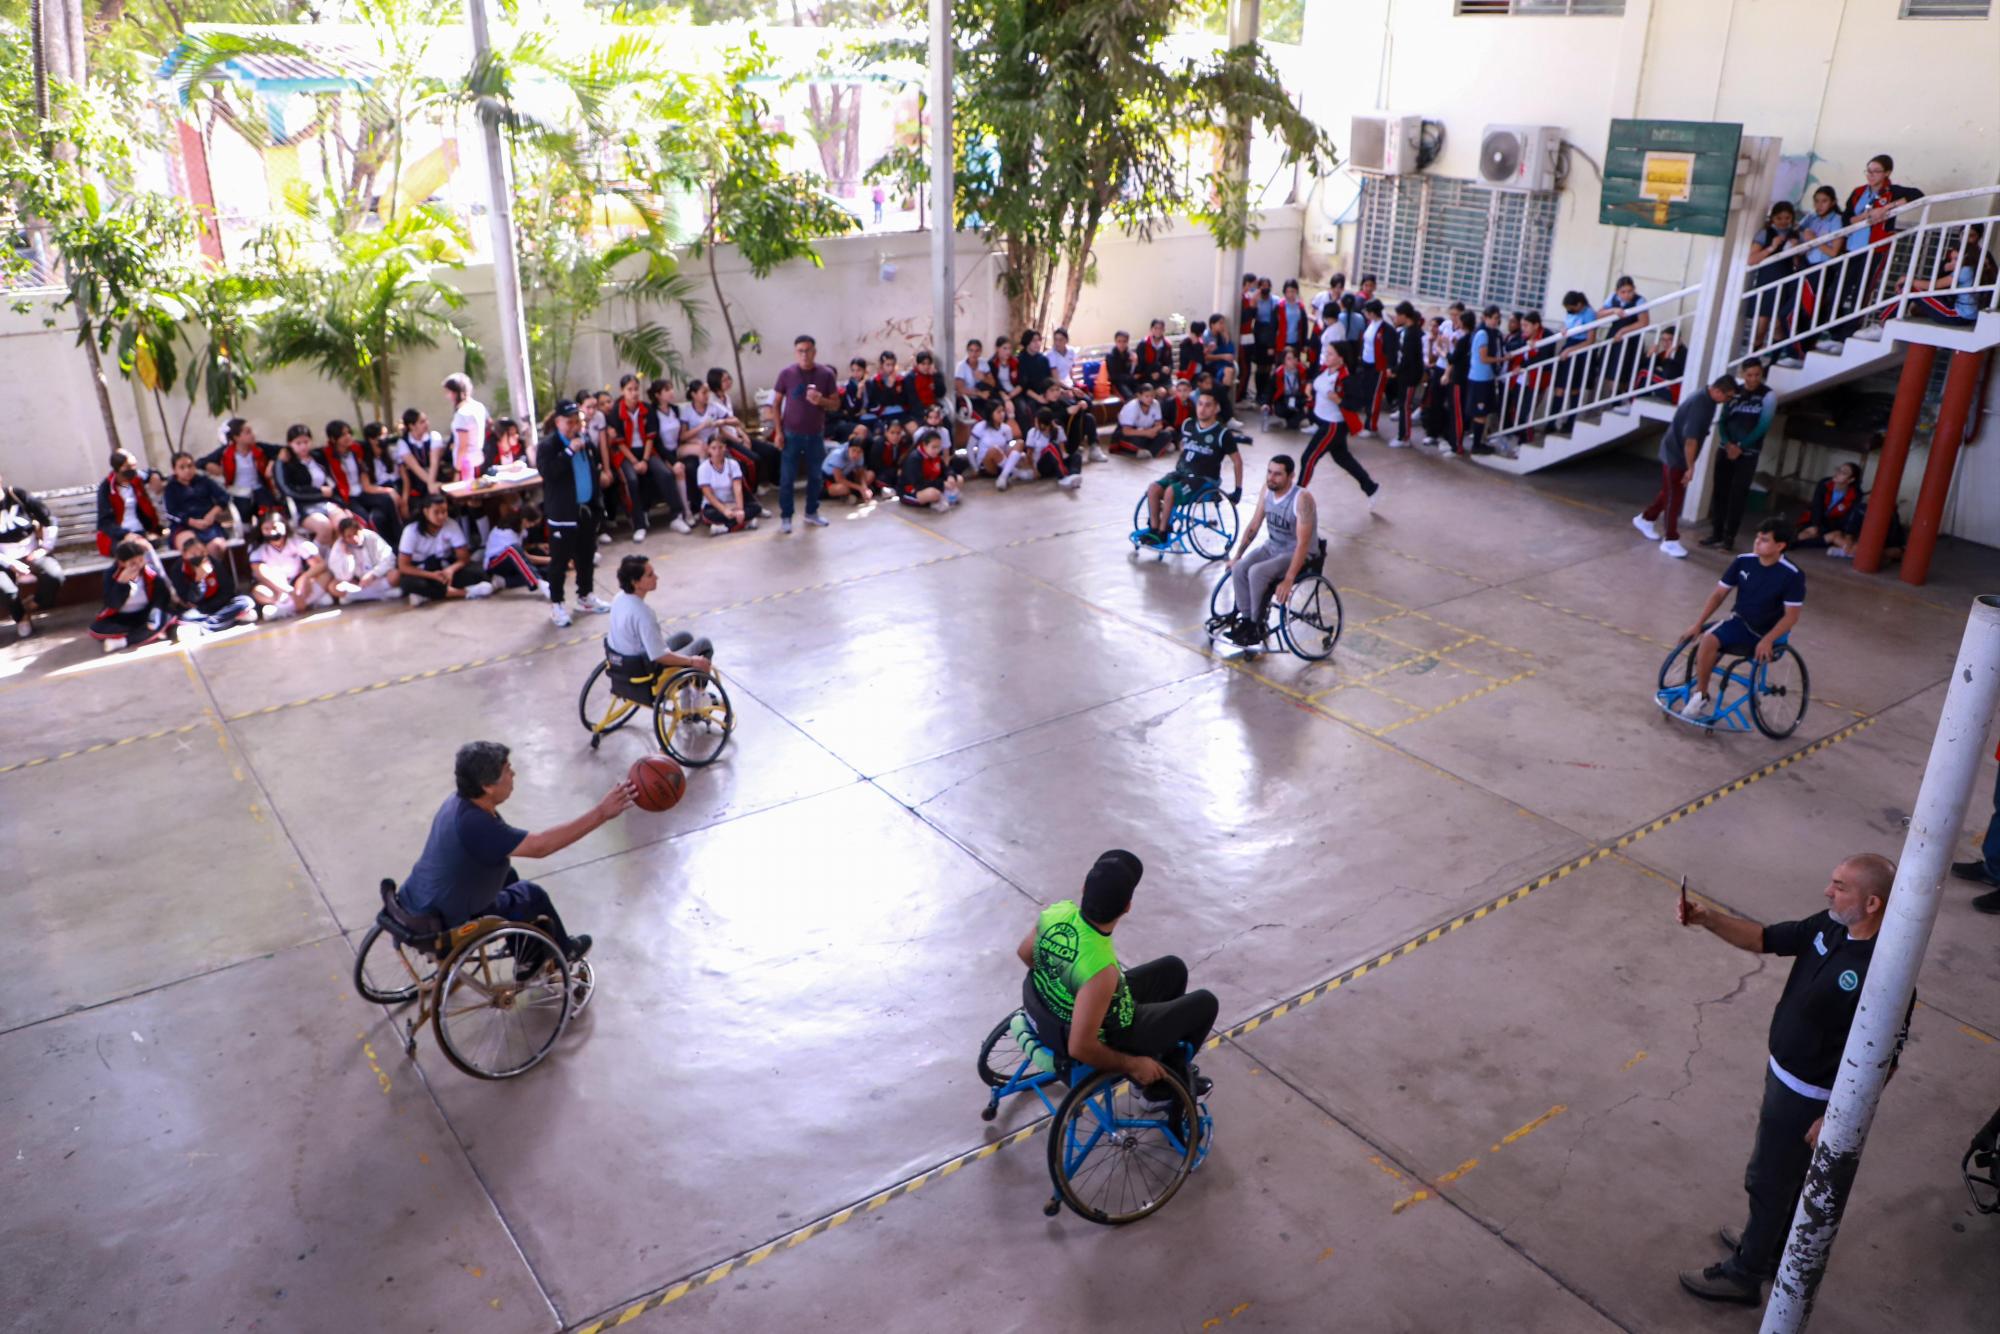 $!A través de Somos Inclusión, promueve DIF Culiacán el deporte adaptado